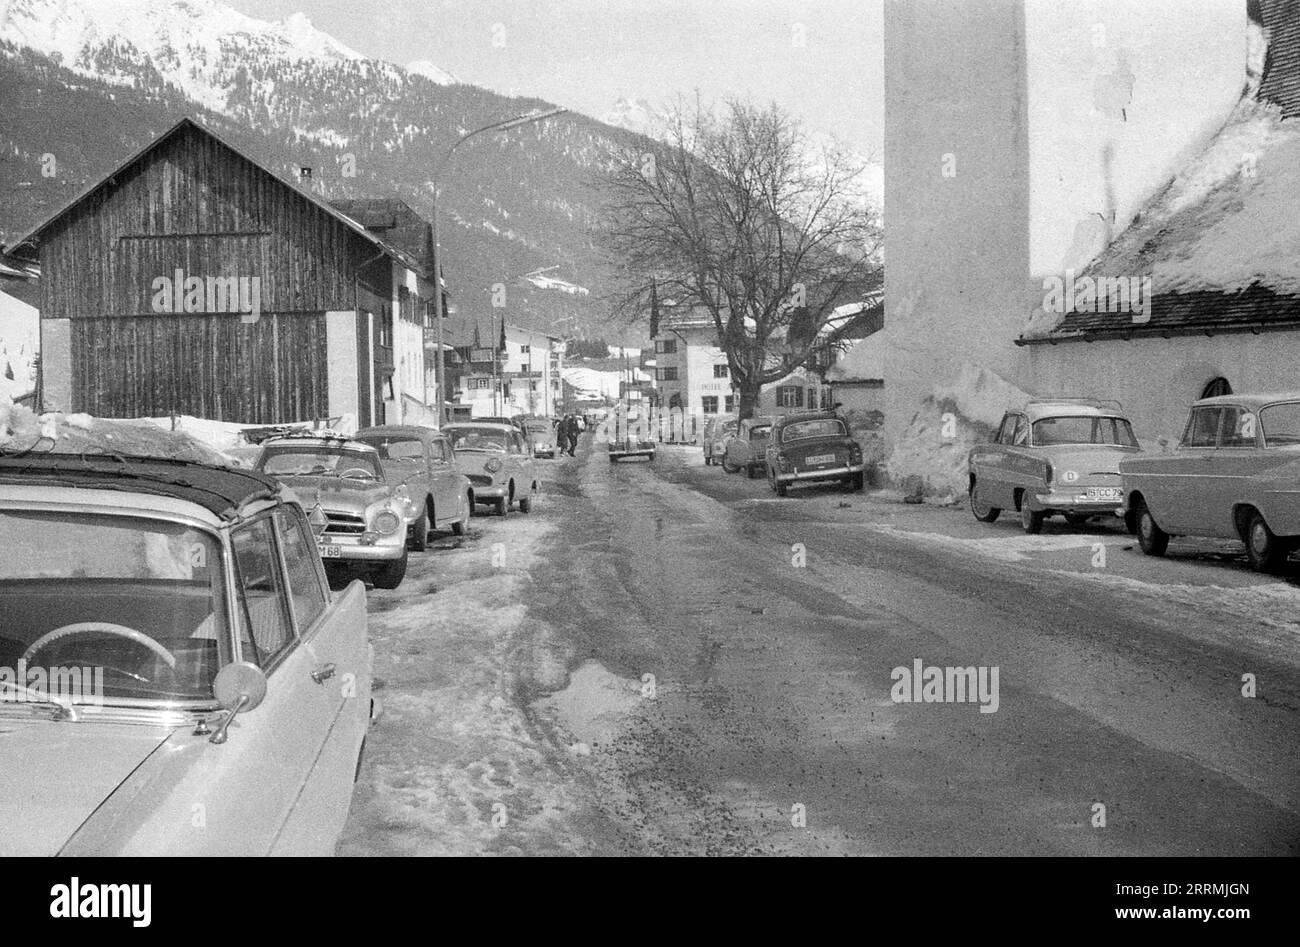 Tirolo, Austria. c.1960 – Una vista di Dorfstraße nel villaggio di St Anton am Arlberg. Sulla destra si trova St Antonio da Padova. Le auto sono parcheggiate su entrambi i lati della strada, che è in condizioni di stanchezza. Gli hotel e le montagne innevate delle Alpi Orientali sono visibili in lontananza. Foto Stock